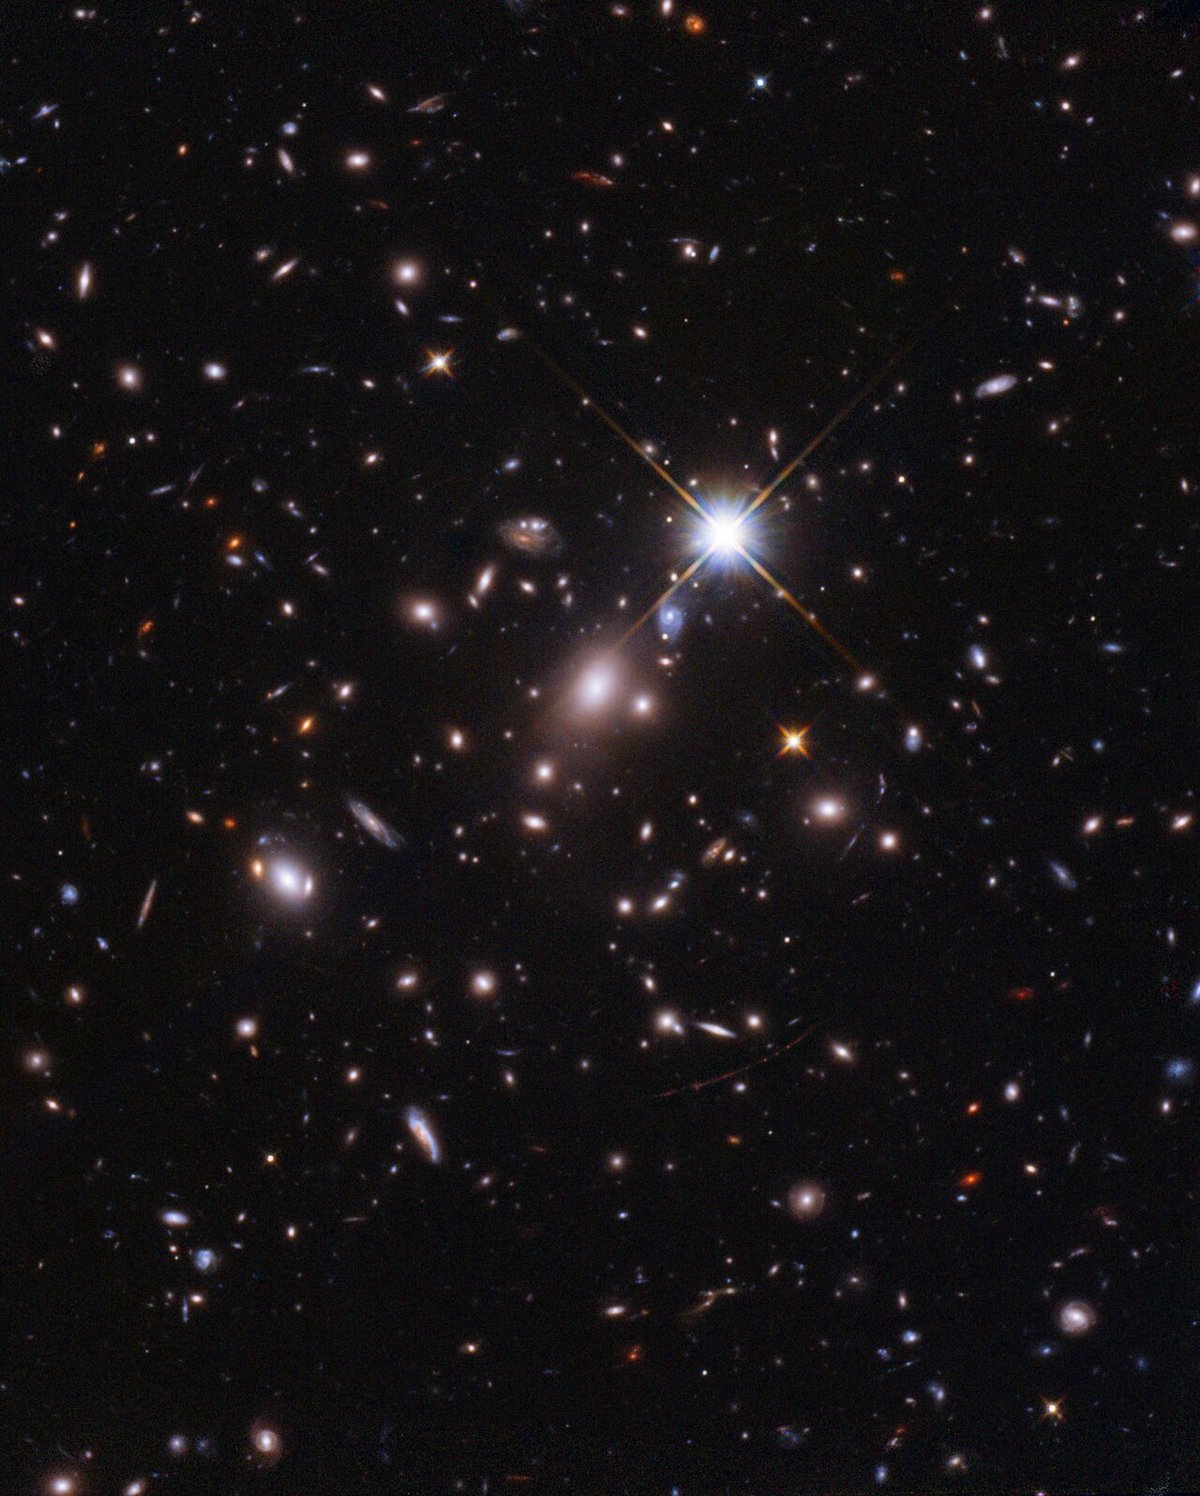 Hubble Aerendel cliché général © NASA, ESA, B. Welch (JHU), D. Coe (STScI), A. Pagan (STScI)